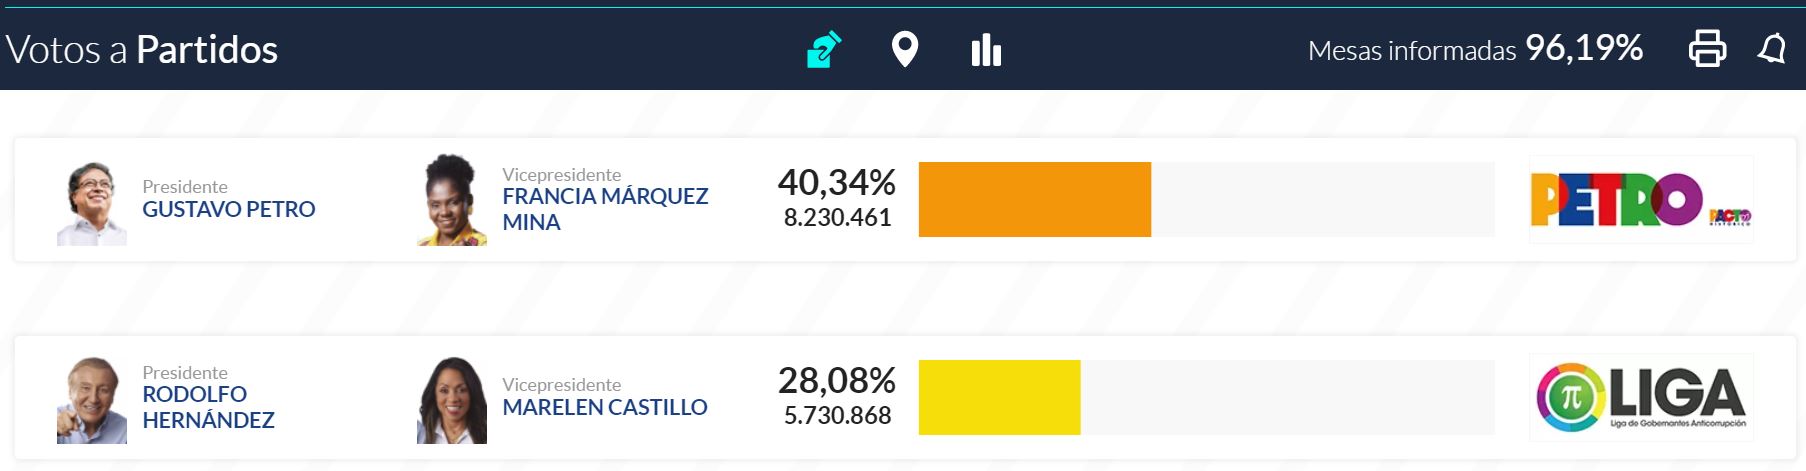 Petro y Rodolfo Hernández definirán en segunda vuelta quién será el próximo Presidente de Colombia